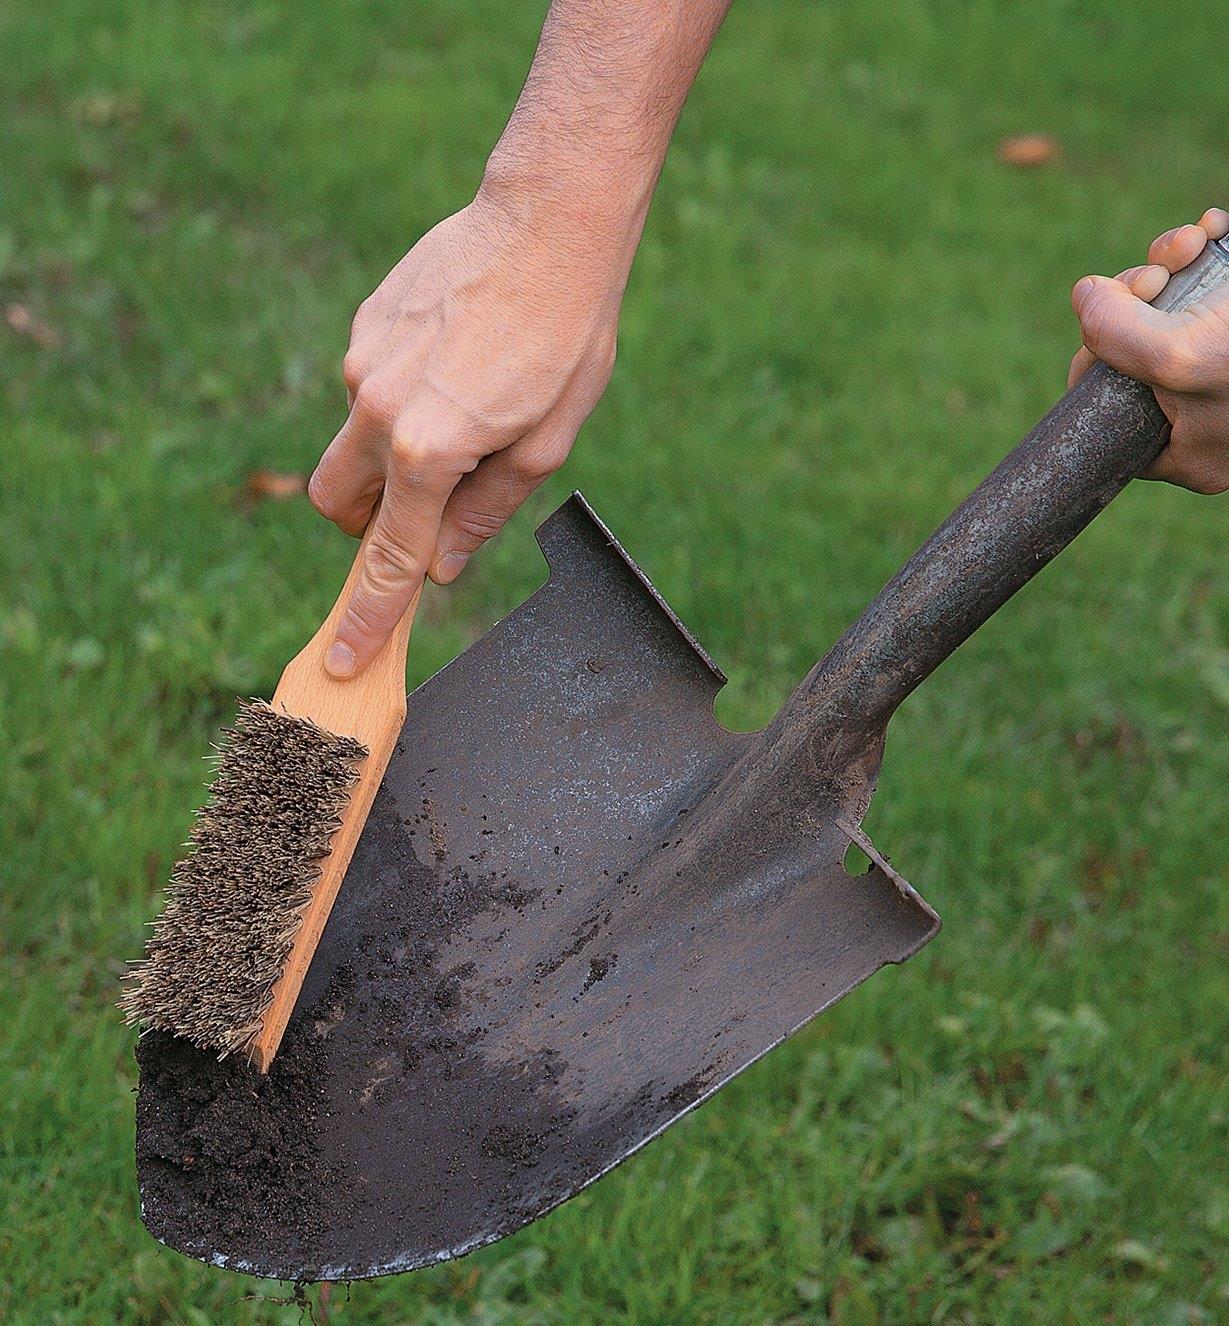 L'extrémité biseautée de la poignée d'une brosse pour outils de jardinage utilisée pour gratter la terre d'une pelle